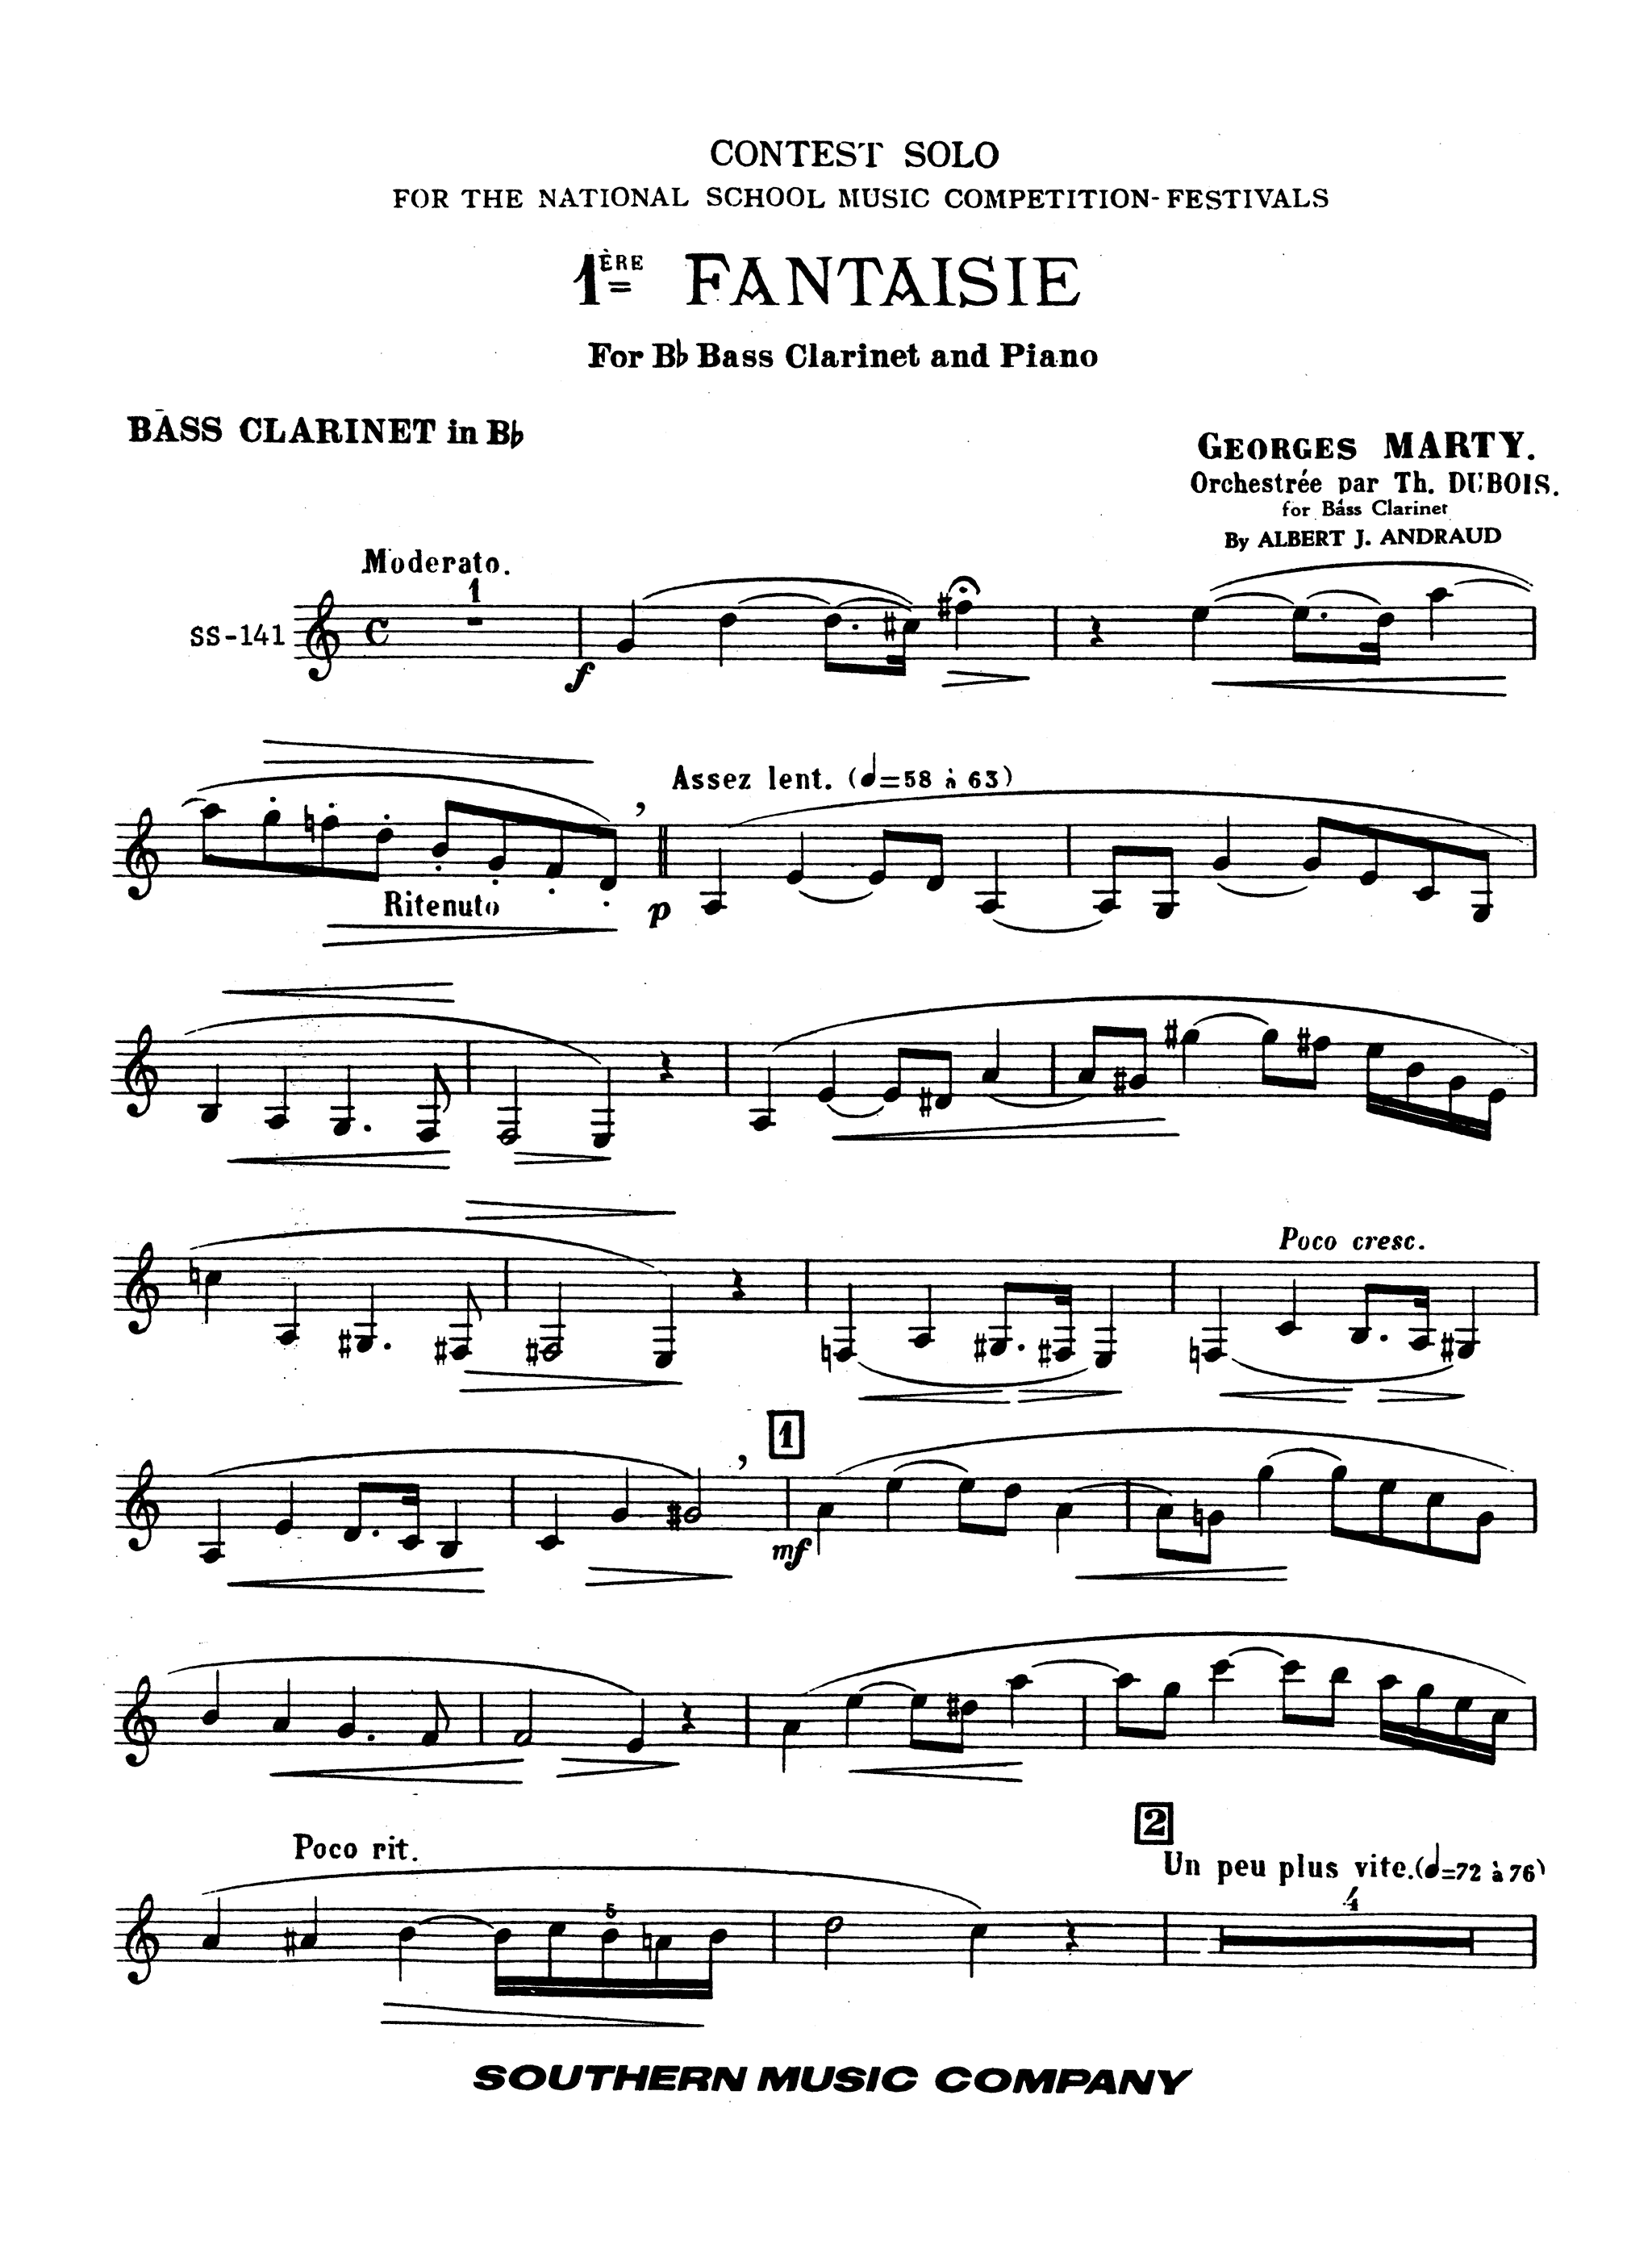 Première Fantaisie Clarinet part